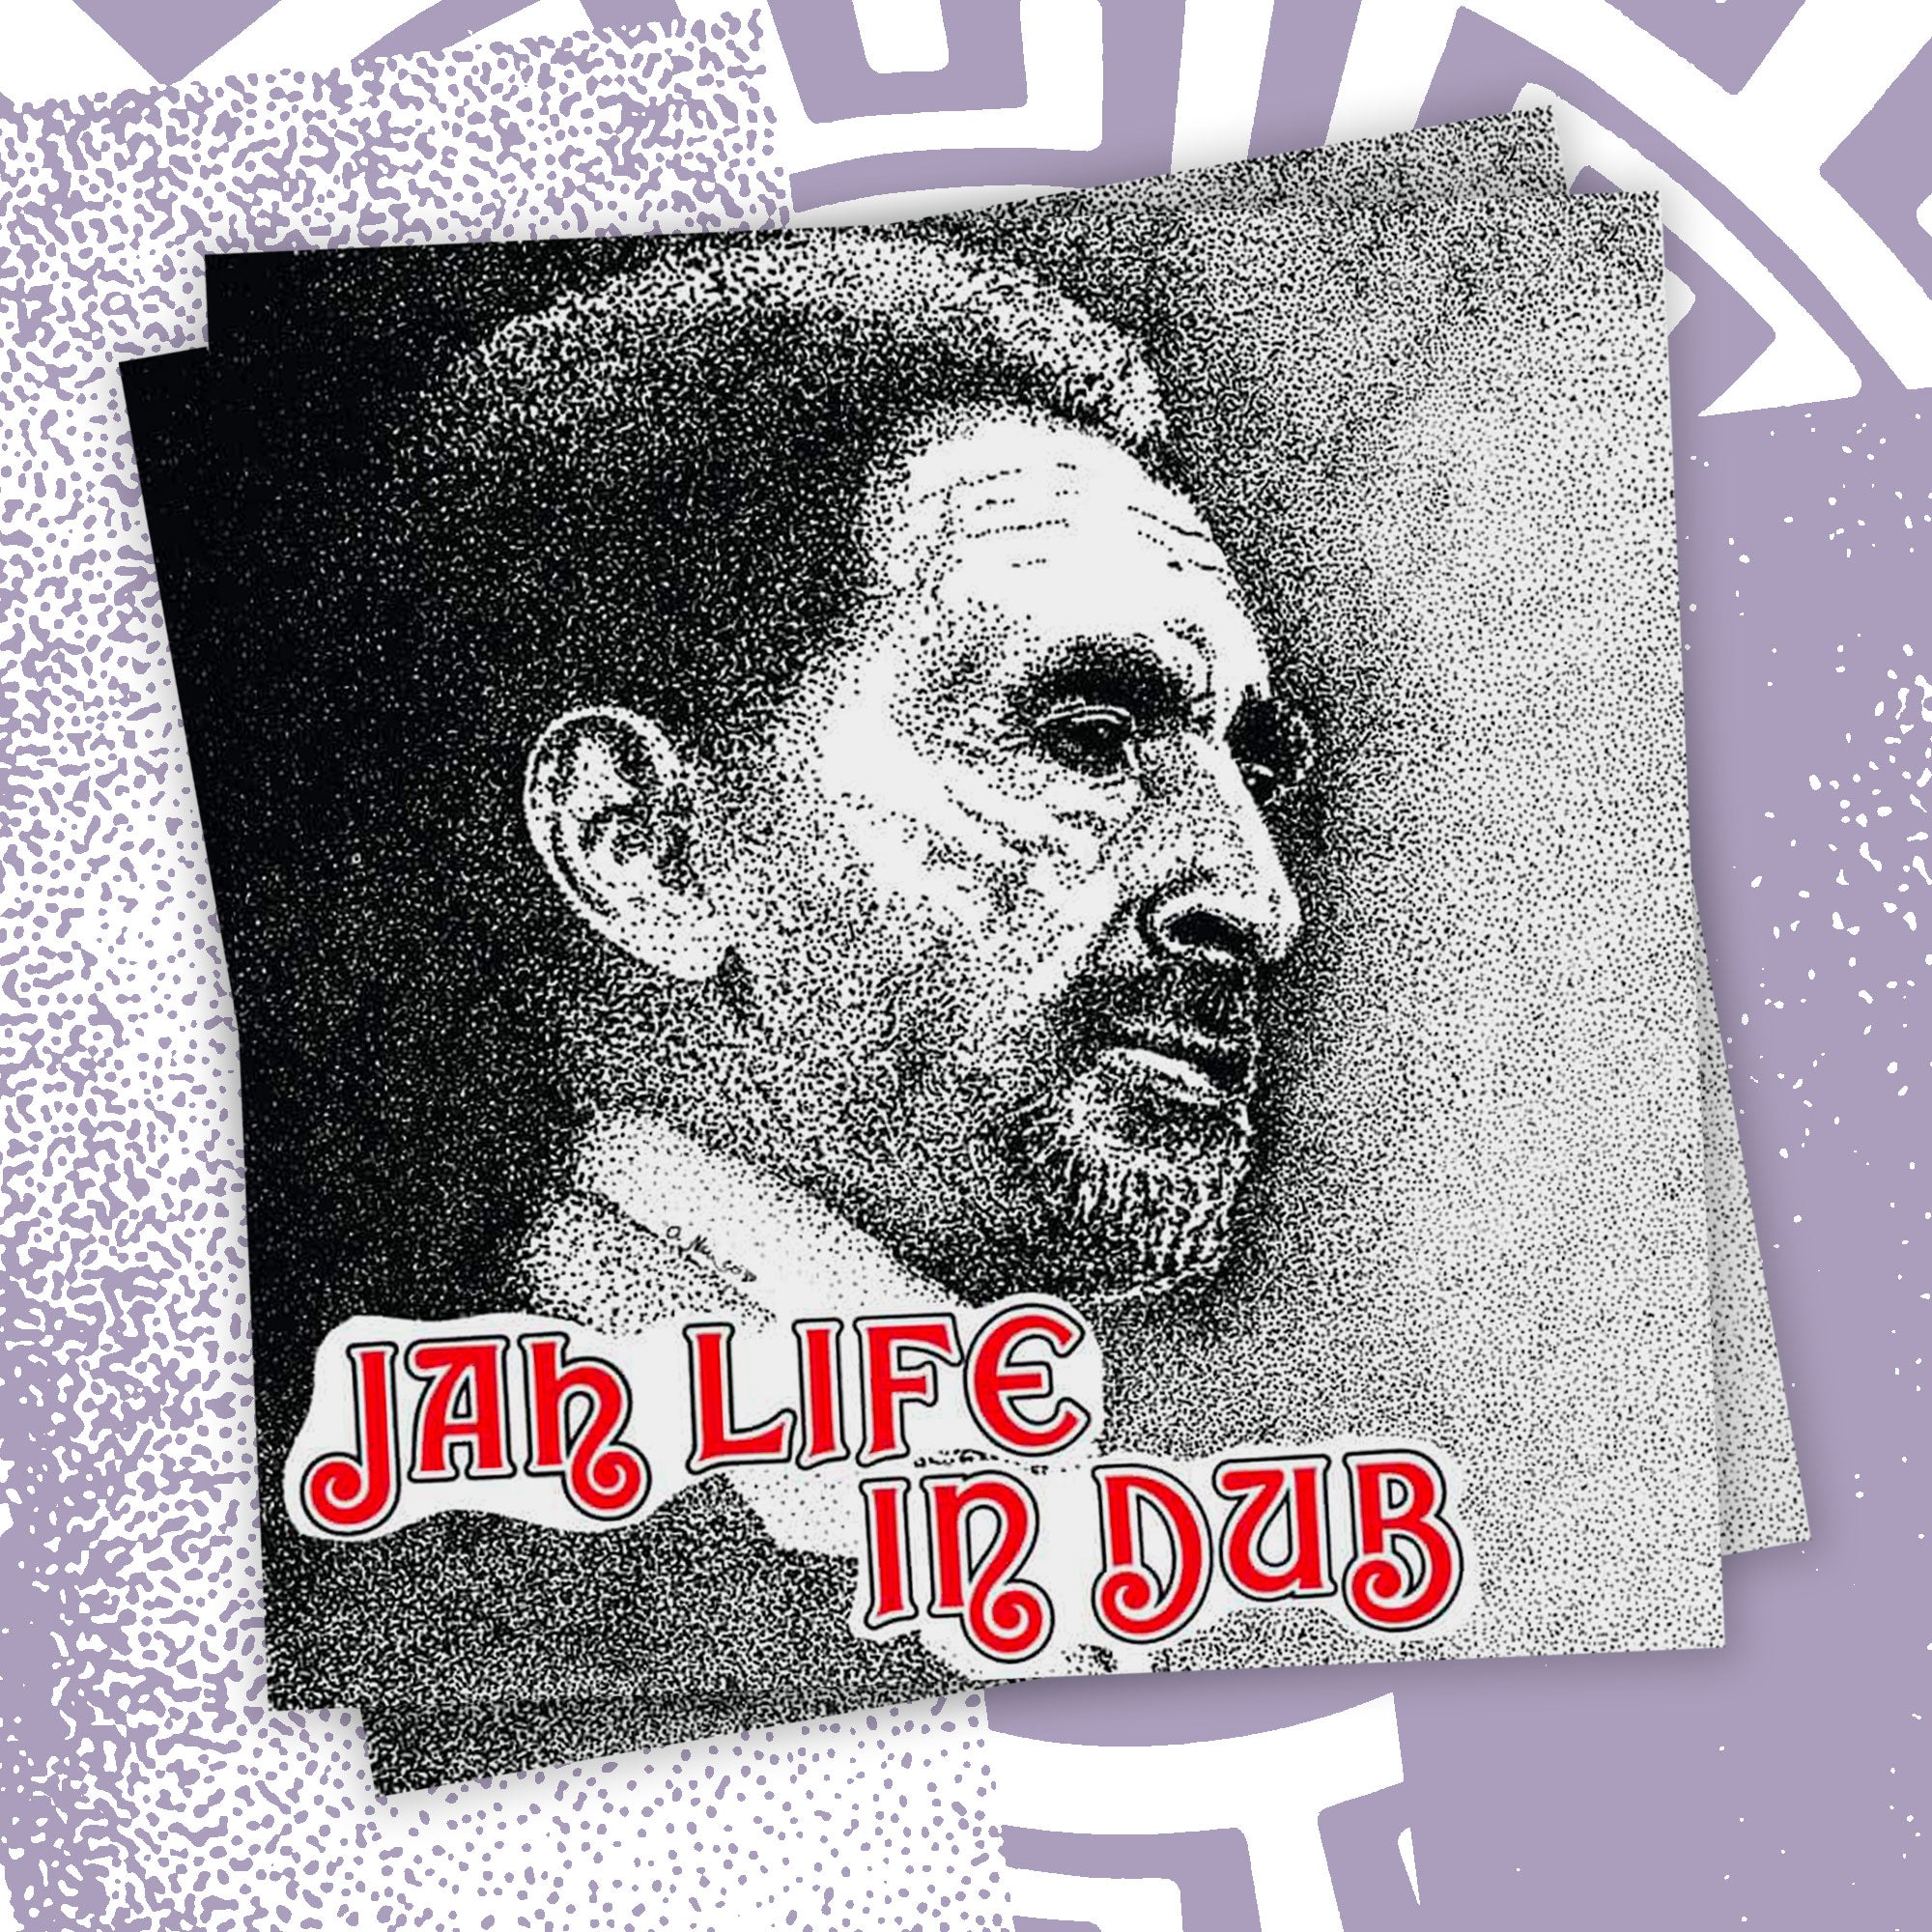 Jah Life - Jah Life in Dub LP